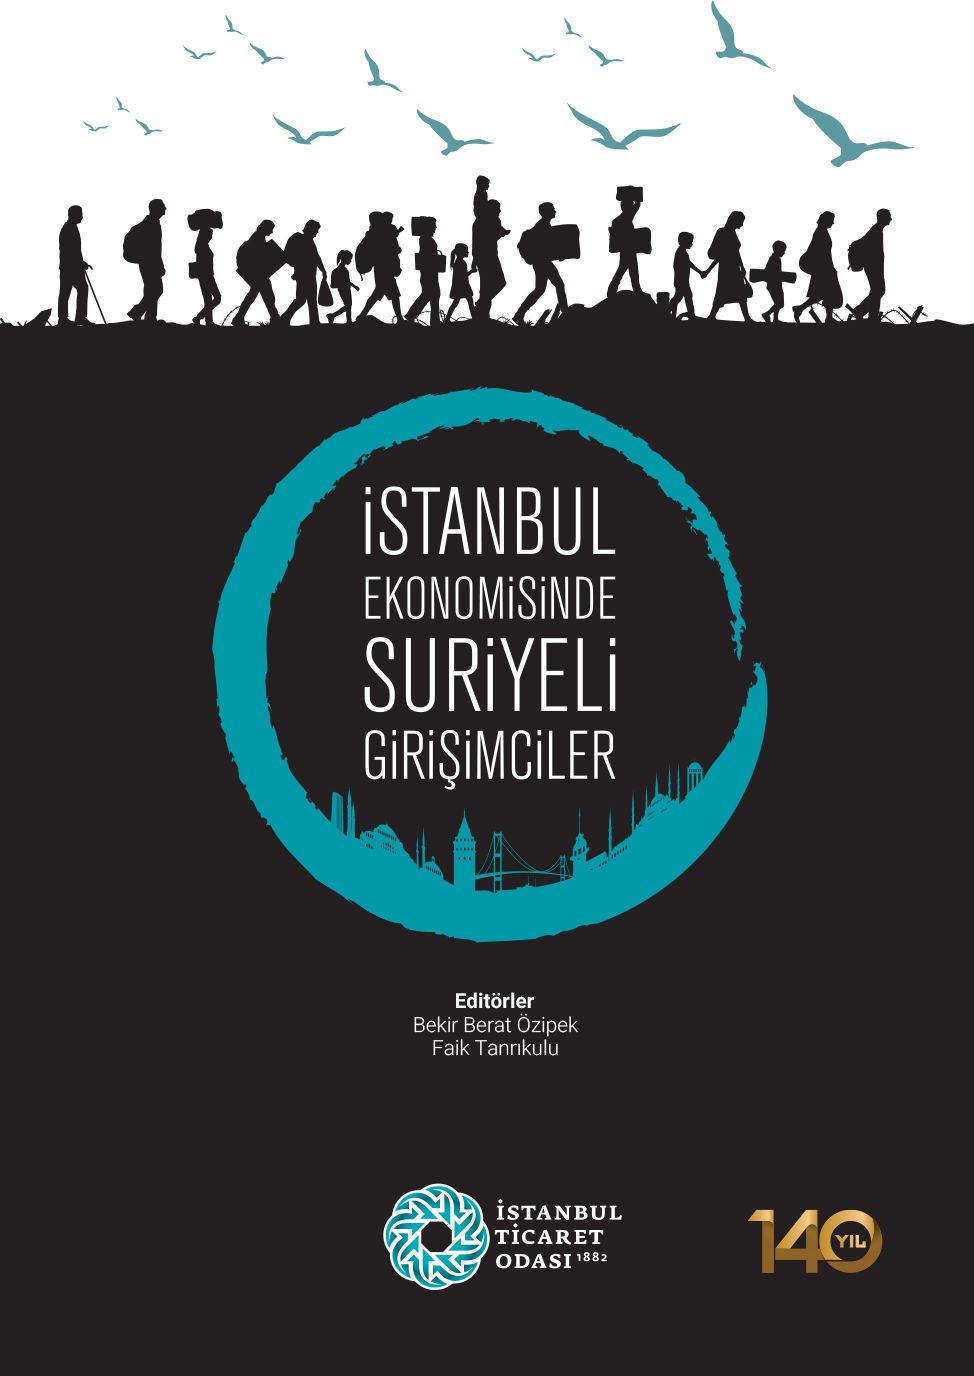 İstanbul Ekonomisinde Suriyeli Girişimciler